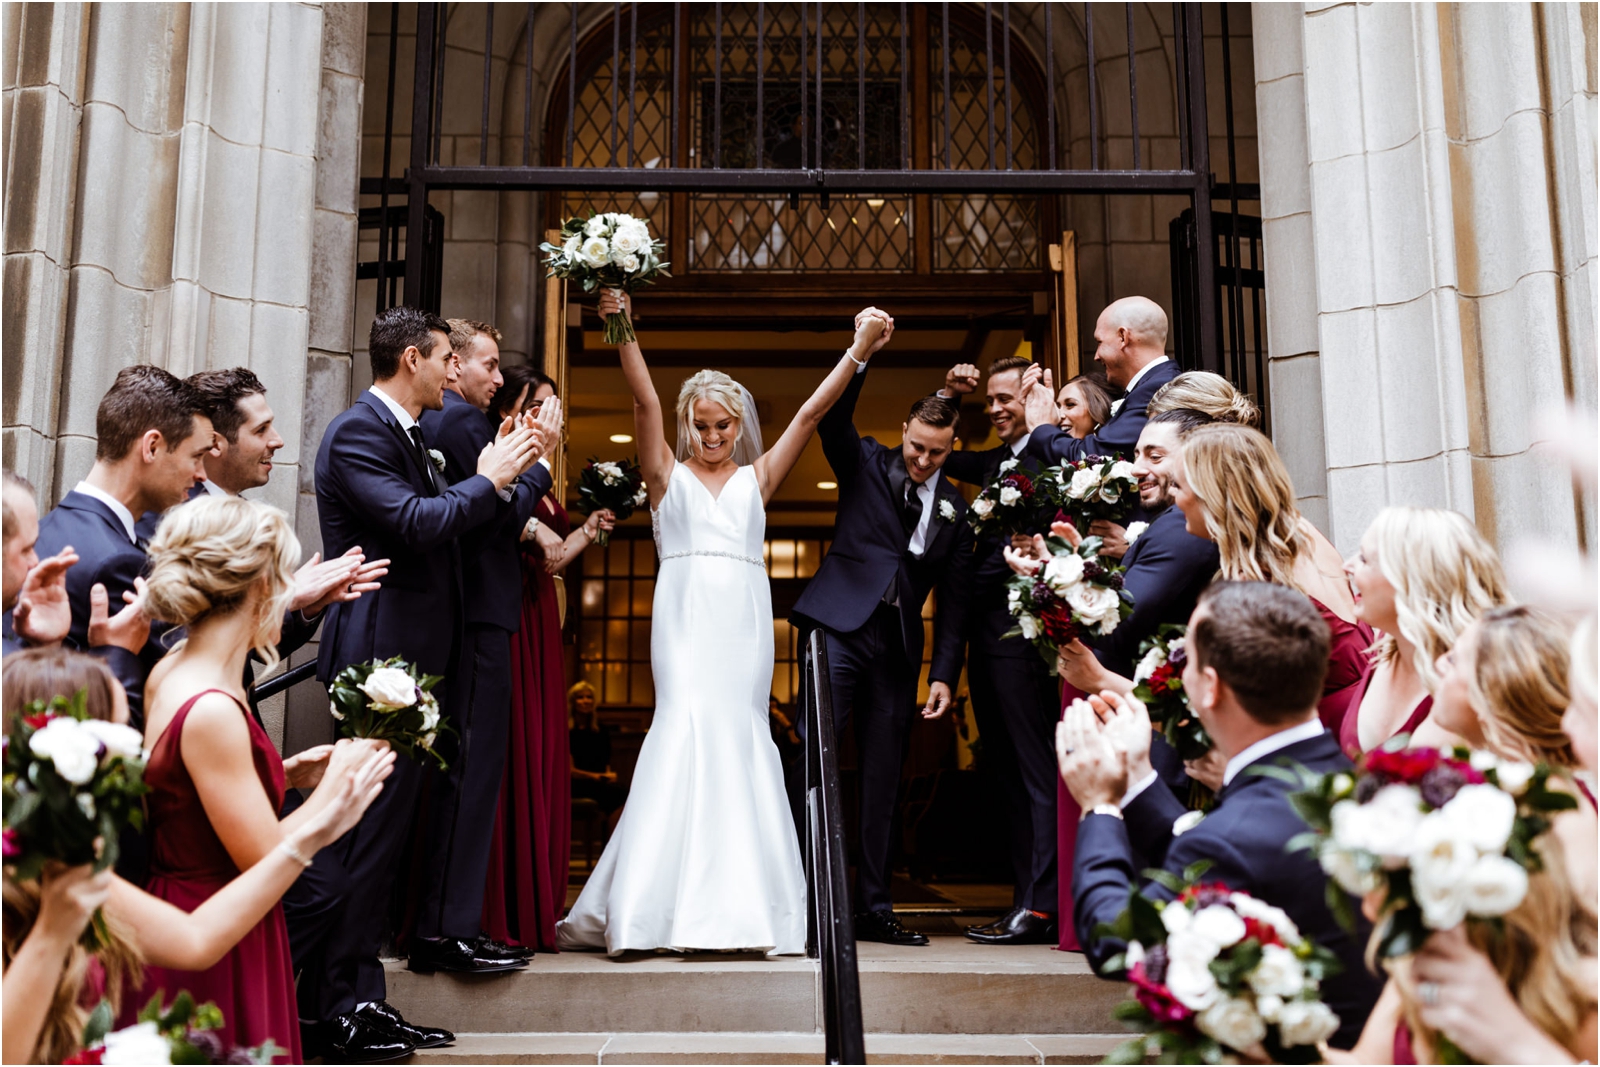 Dalcy-Wedding-Chicago-JillTiongcoPhotography_0018.jpg